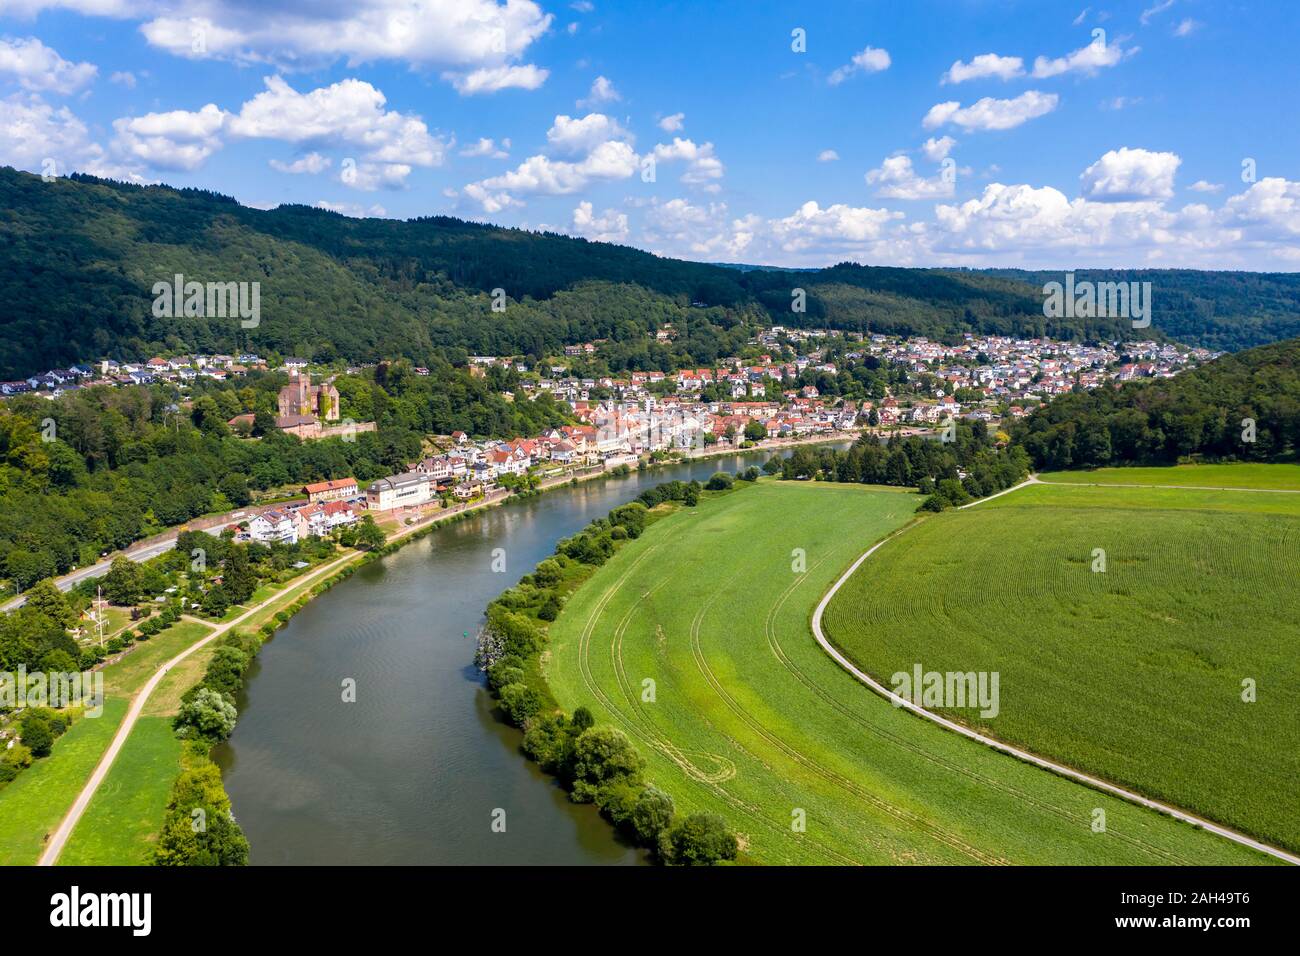 Germany, Baden-Wurttemberg, Neckarsteinach, Aerial view of town and castles Schadeck, Vorderburg, Mittelburg, Hinterburg Stock Photo